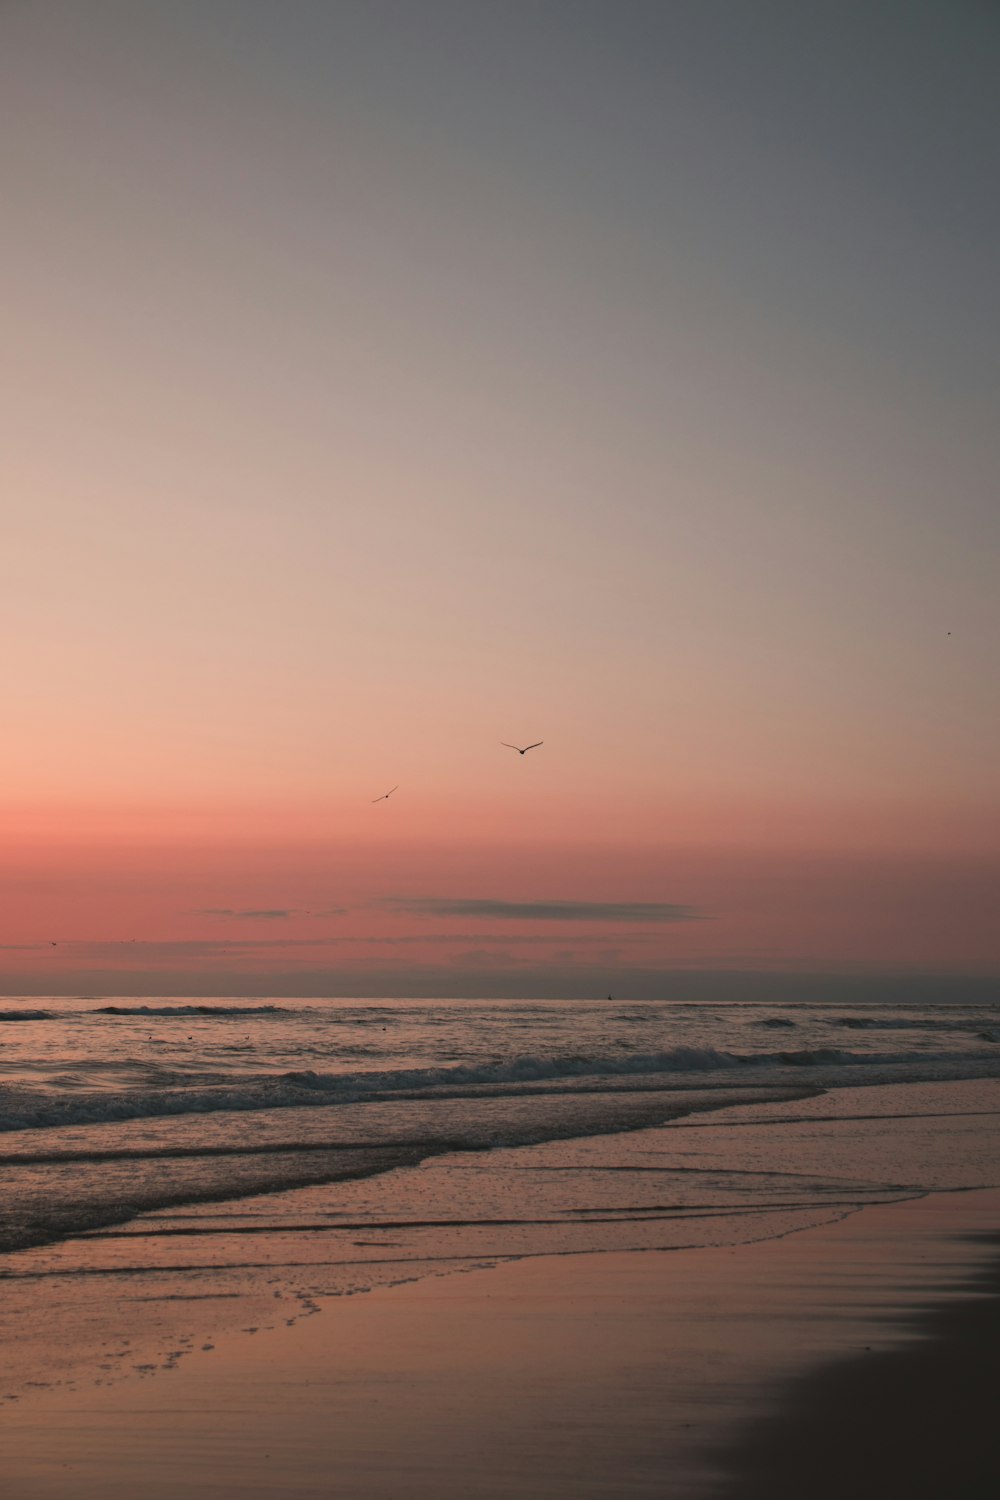 pájaro volando sobre el mar durante la puesta del sol